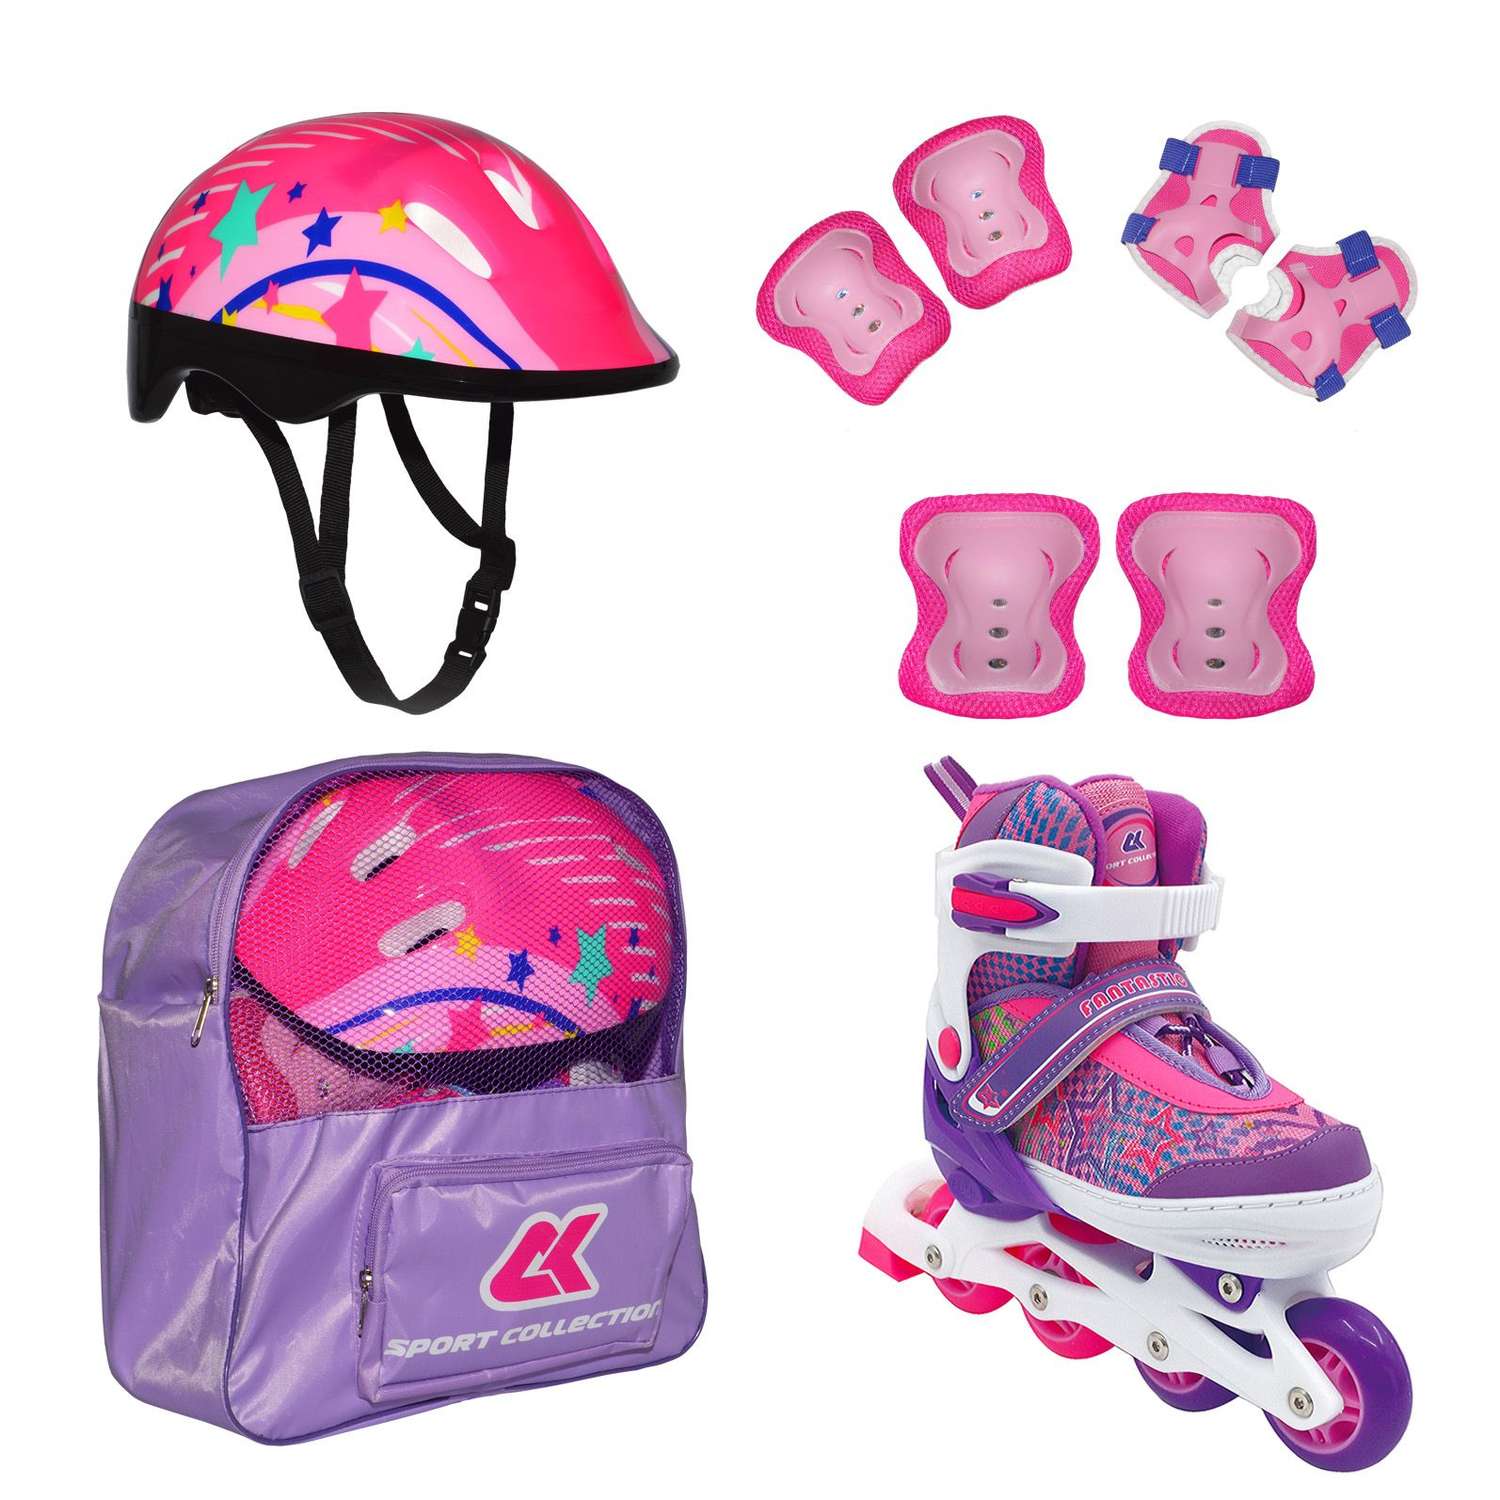 Набор роликовые коньки Sport Collection раздвижные Set Fantastic Violet шлем и набор защиты в сумке размер S 29-32 - фото 1